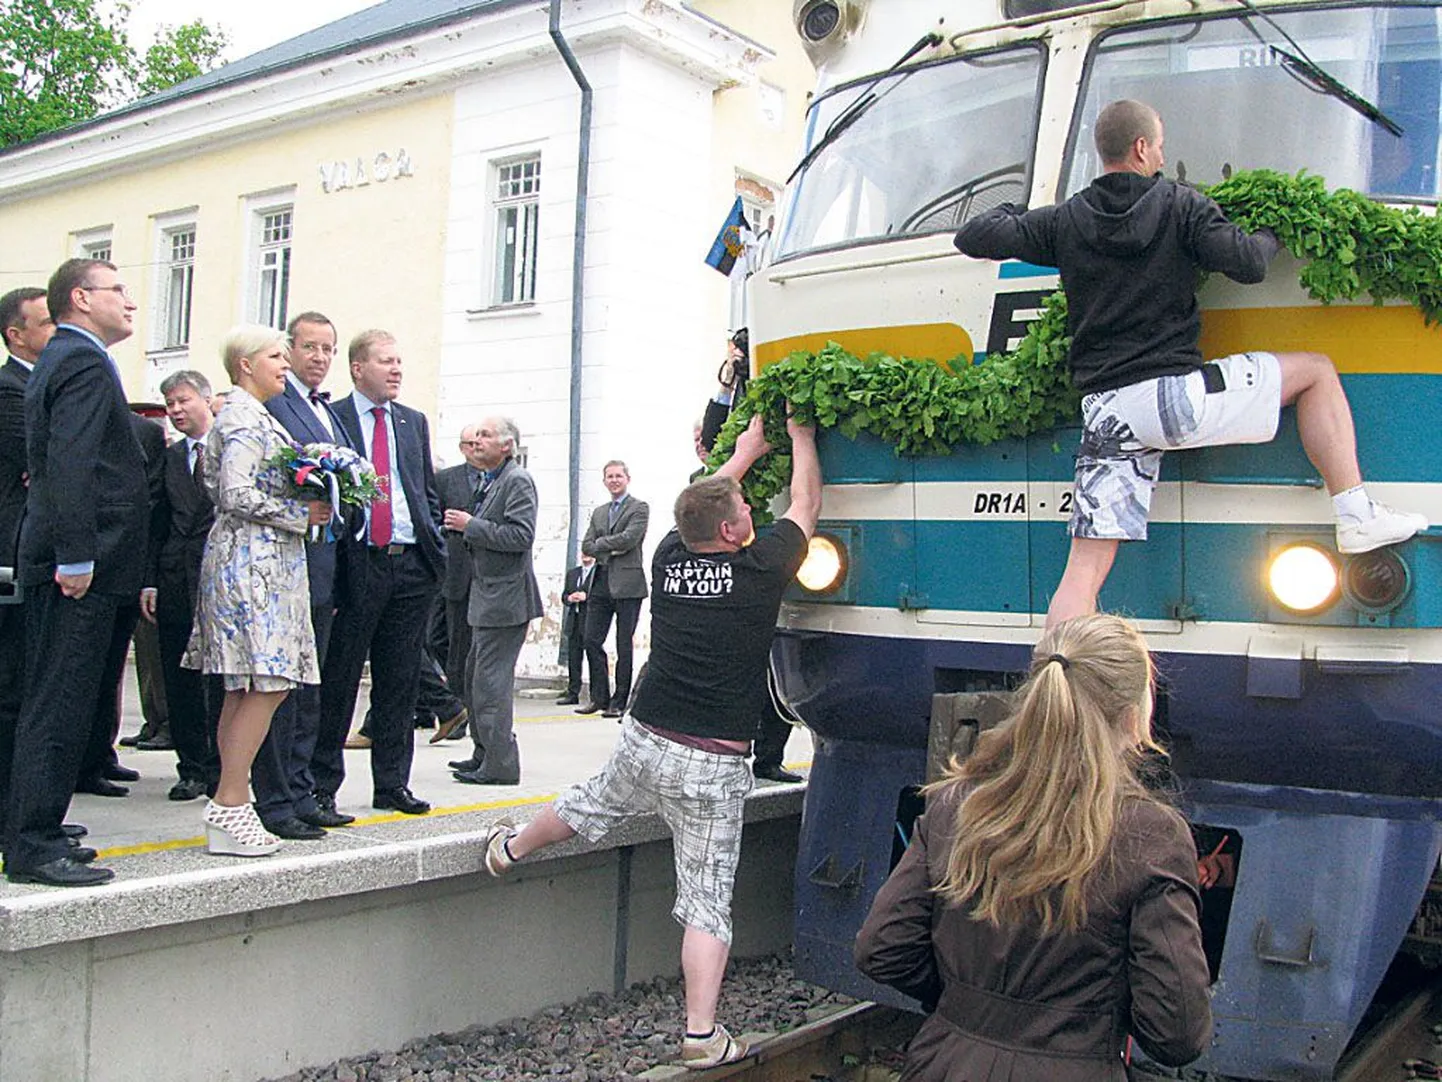 Eesti Vabariigi presidendi ja Evelin Ilvese riigivisiit Läti Vabariiki algas mitmetunnise rongisõiduga. Valgas peatumise ajal kinnitasid agarad noorsandid vedurininasse tammepärja.